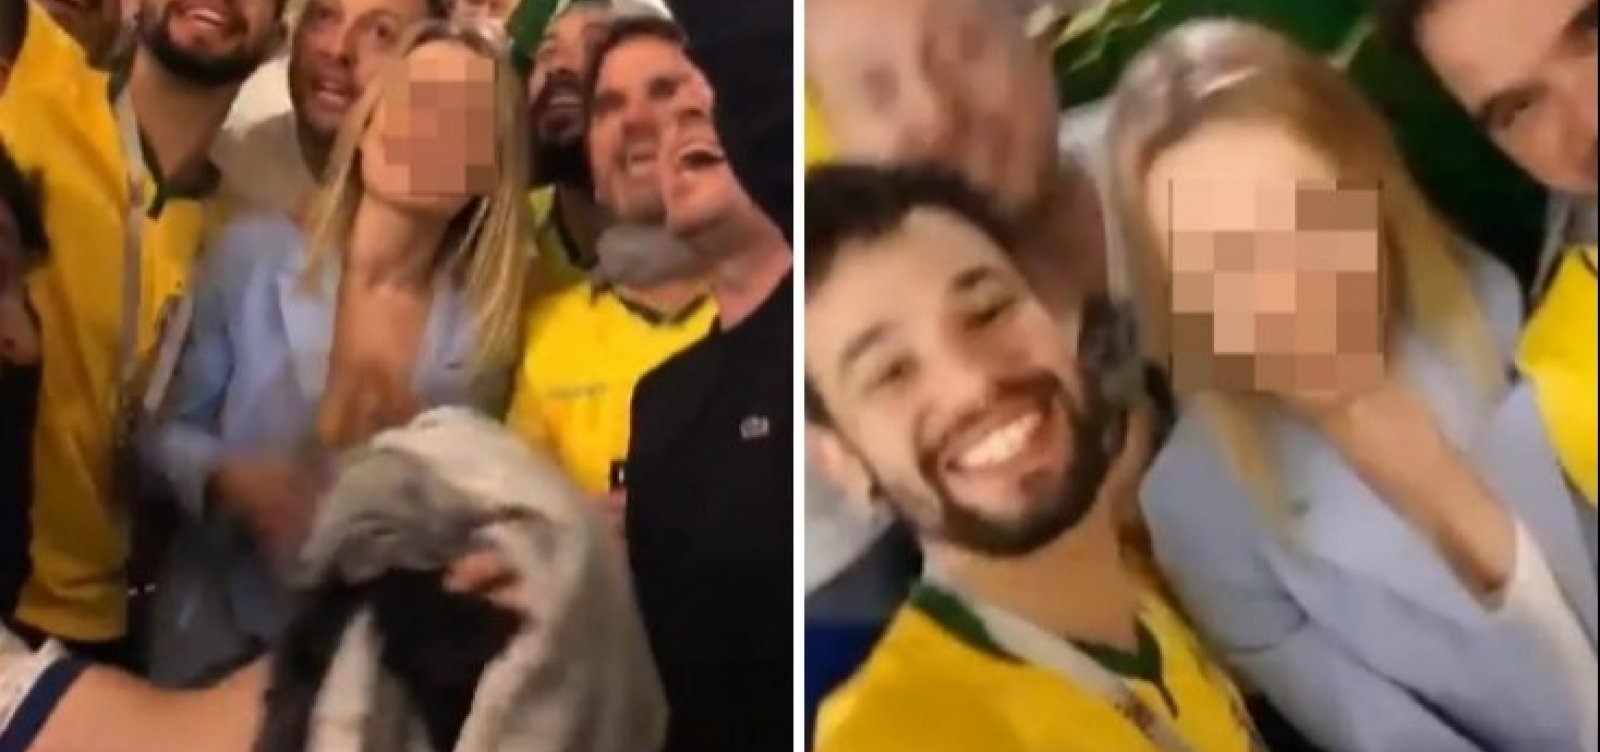 [Acusados de assédio em vídeo, torcedores brasileiros são denunciados na Rússia]